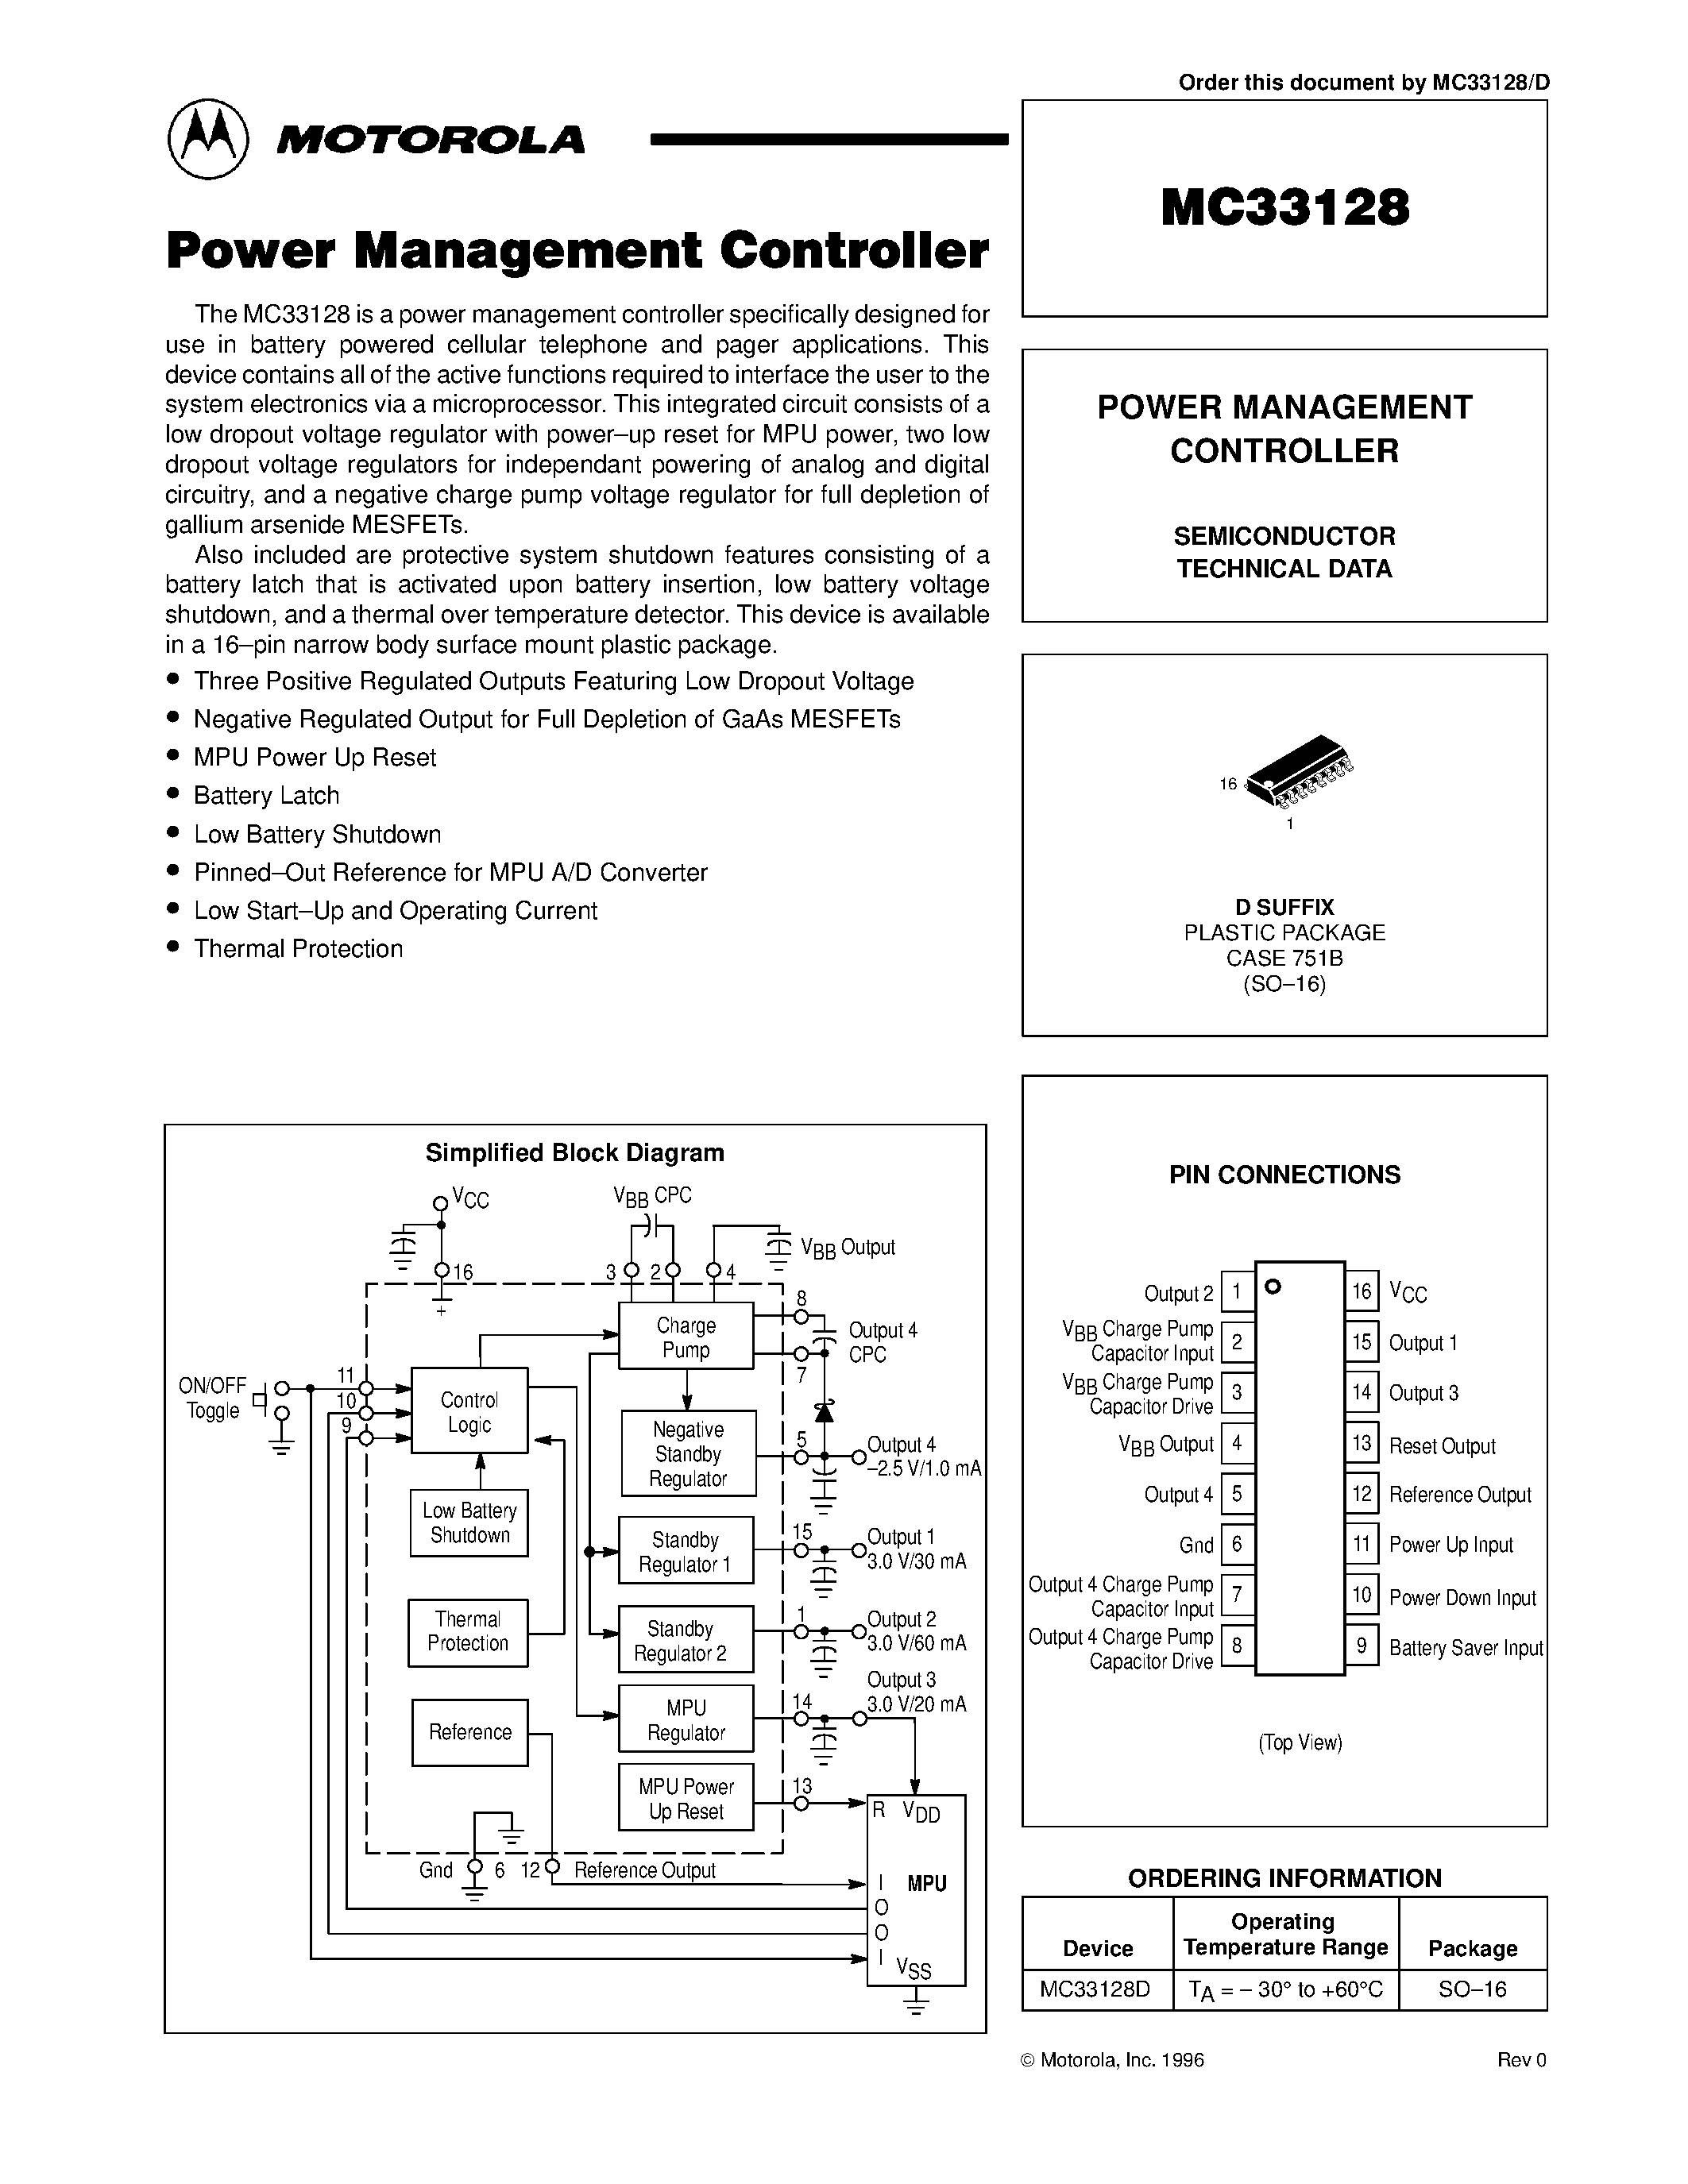 Даташит MC33128 - POWER MANAGEMENT CONTROLLER страница 1